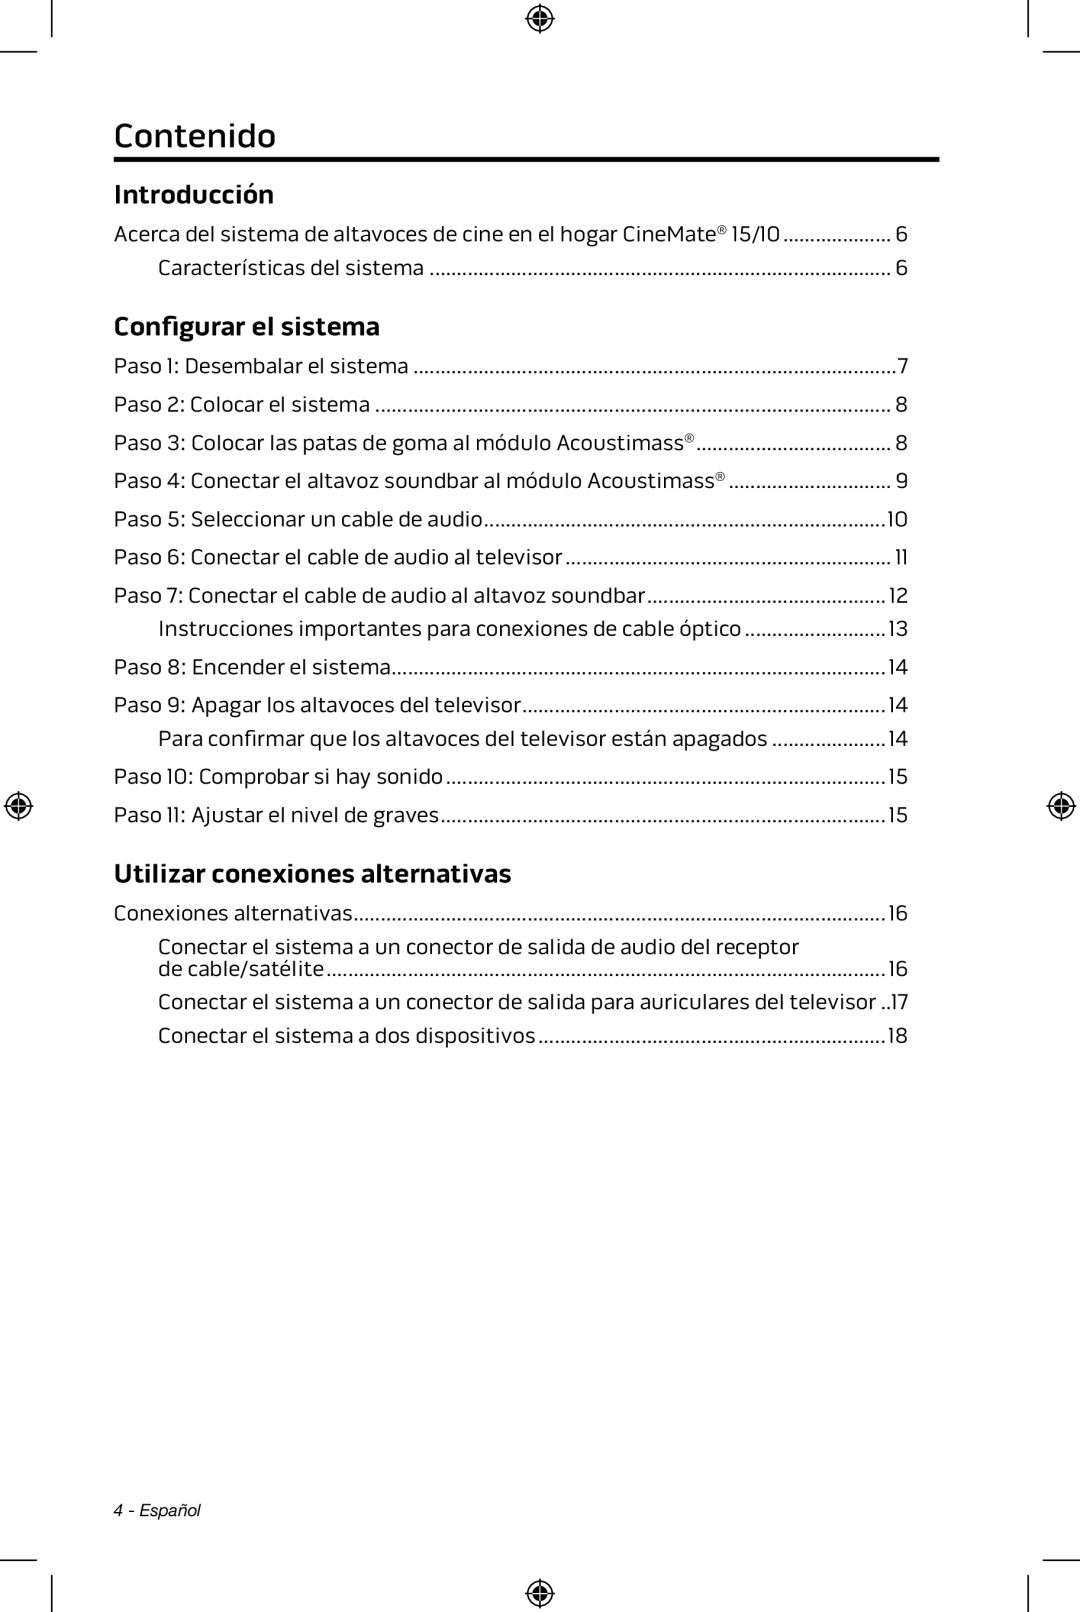 Bose CineMate 15/10 manual Contenido, Introducción, Configurar el sistema, Utilizar conexiones alternativas 